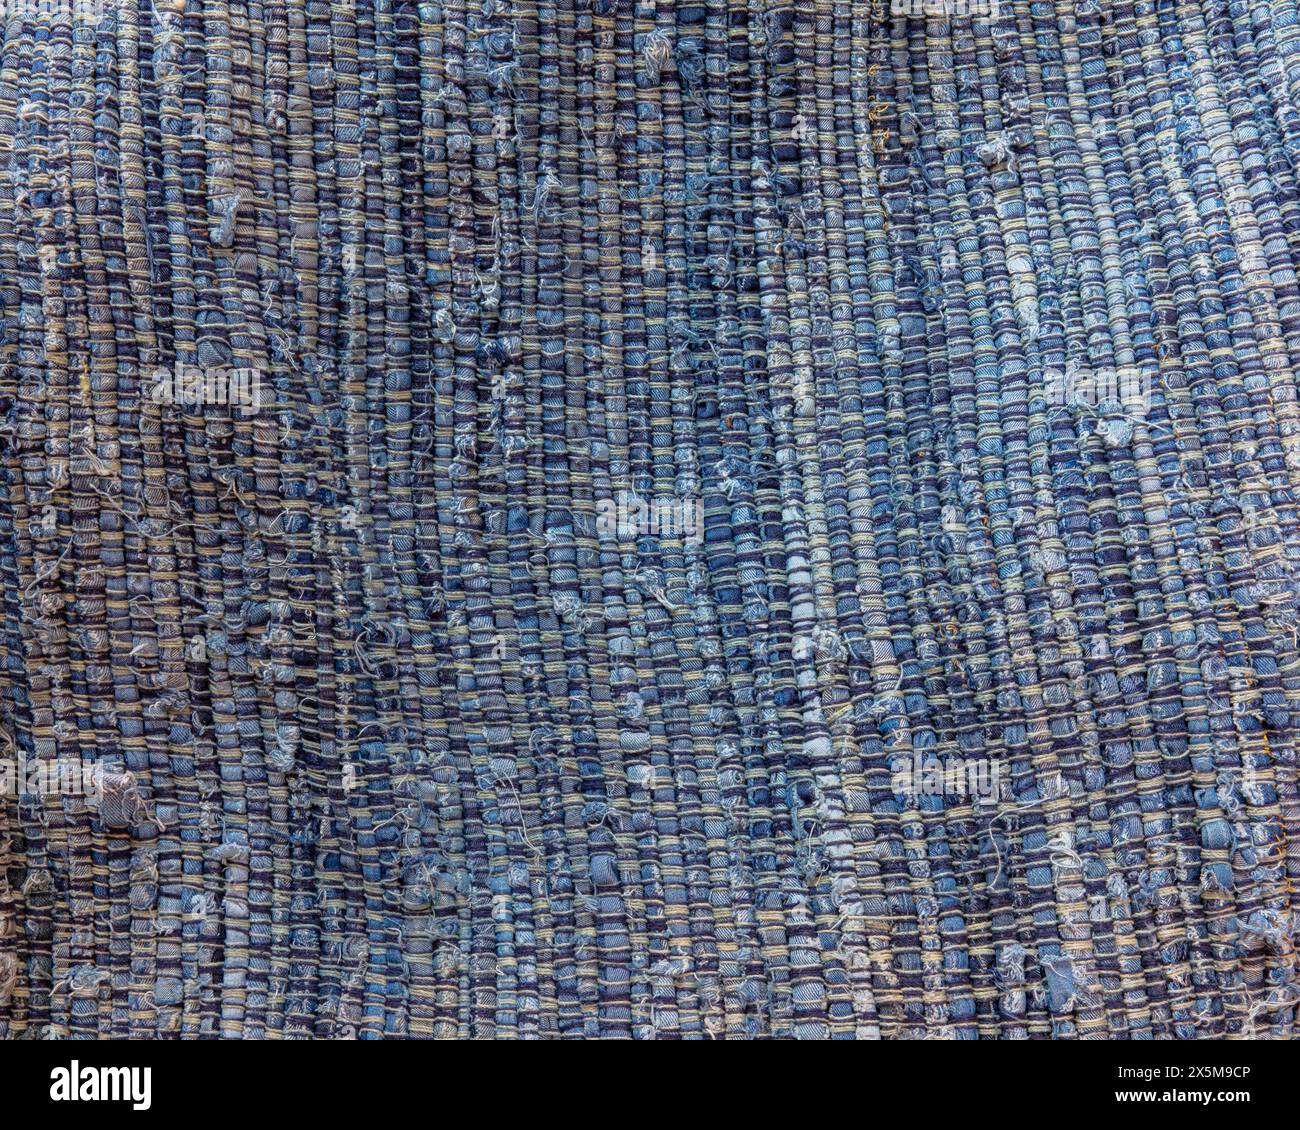 Nahaufnahme eines blau-braunen, aufgenähten Teppichs aus recyceltem Stoff. Stockfoto